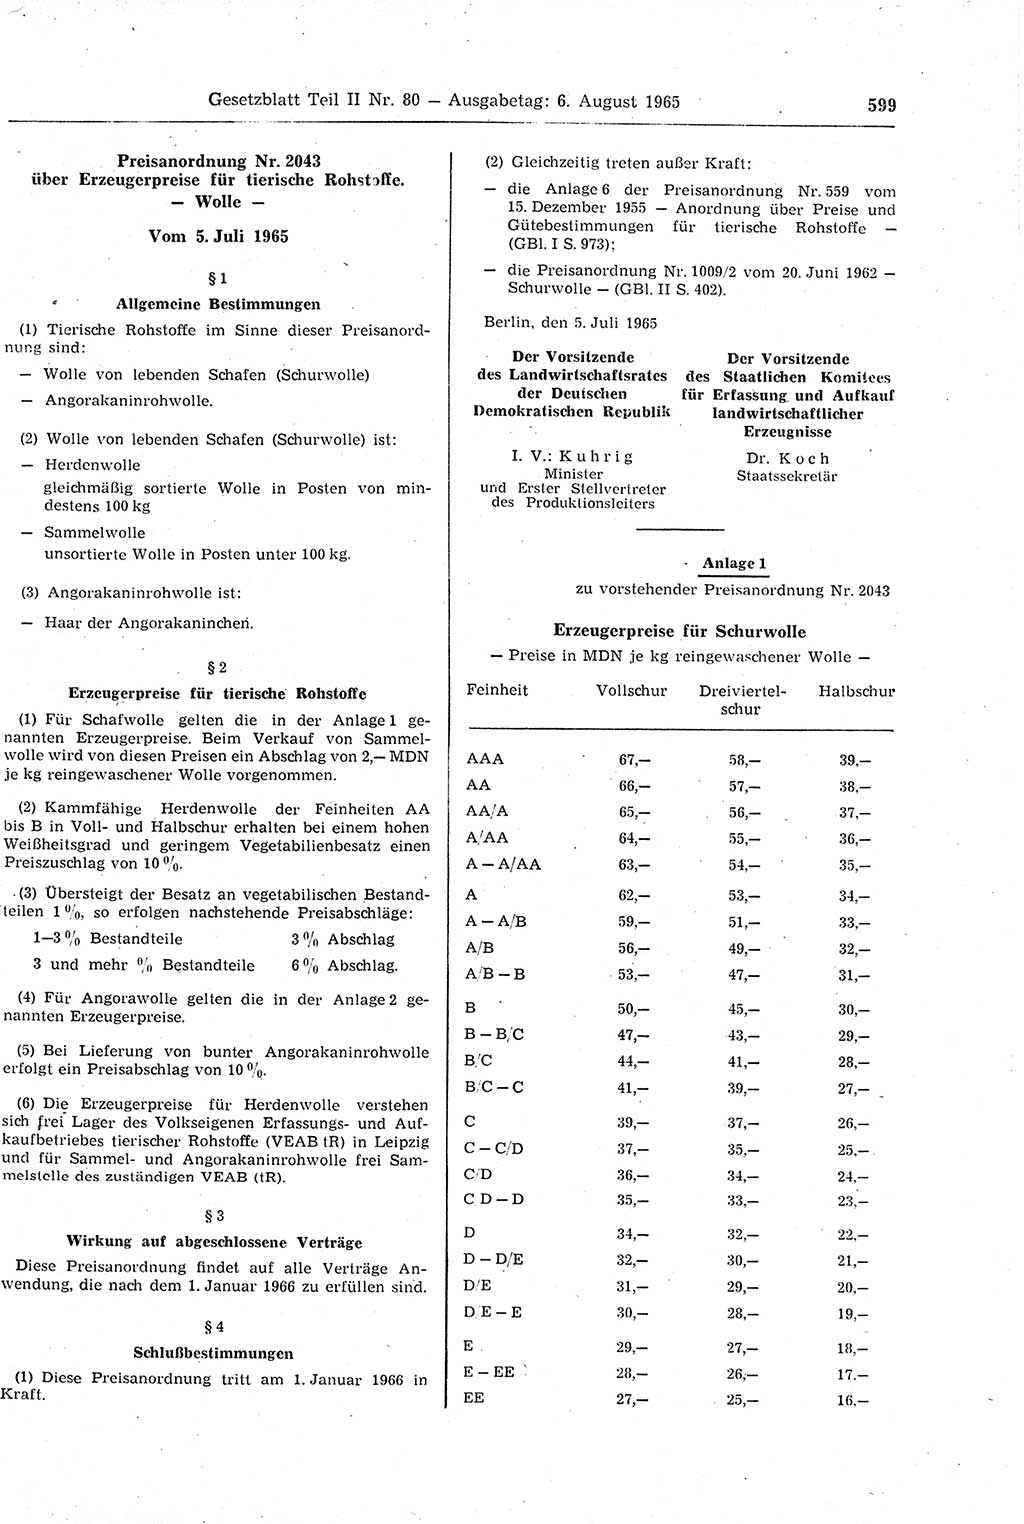 Gesetzblatt (GBl.) der Deutschen Demokratischen Republik (DDR) Teil ⅠⅠ 1965, Seite 599 (GBl. DDR ⅠⅠ 1965, S. 599)